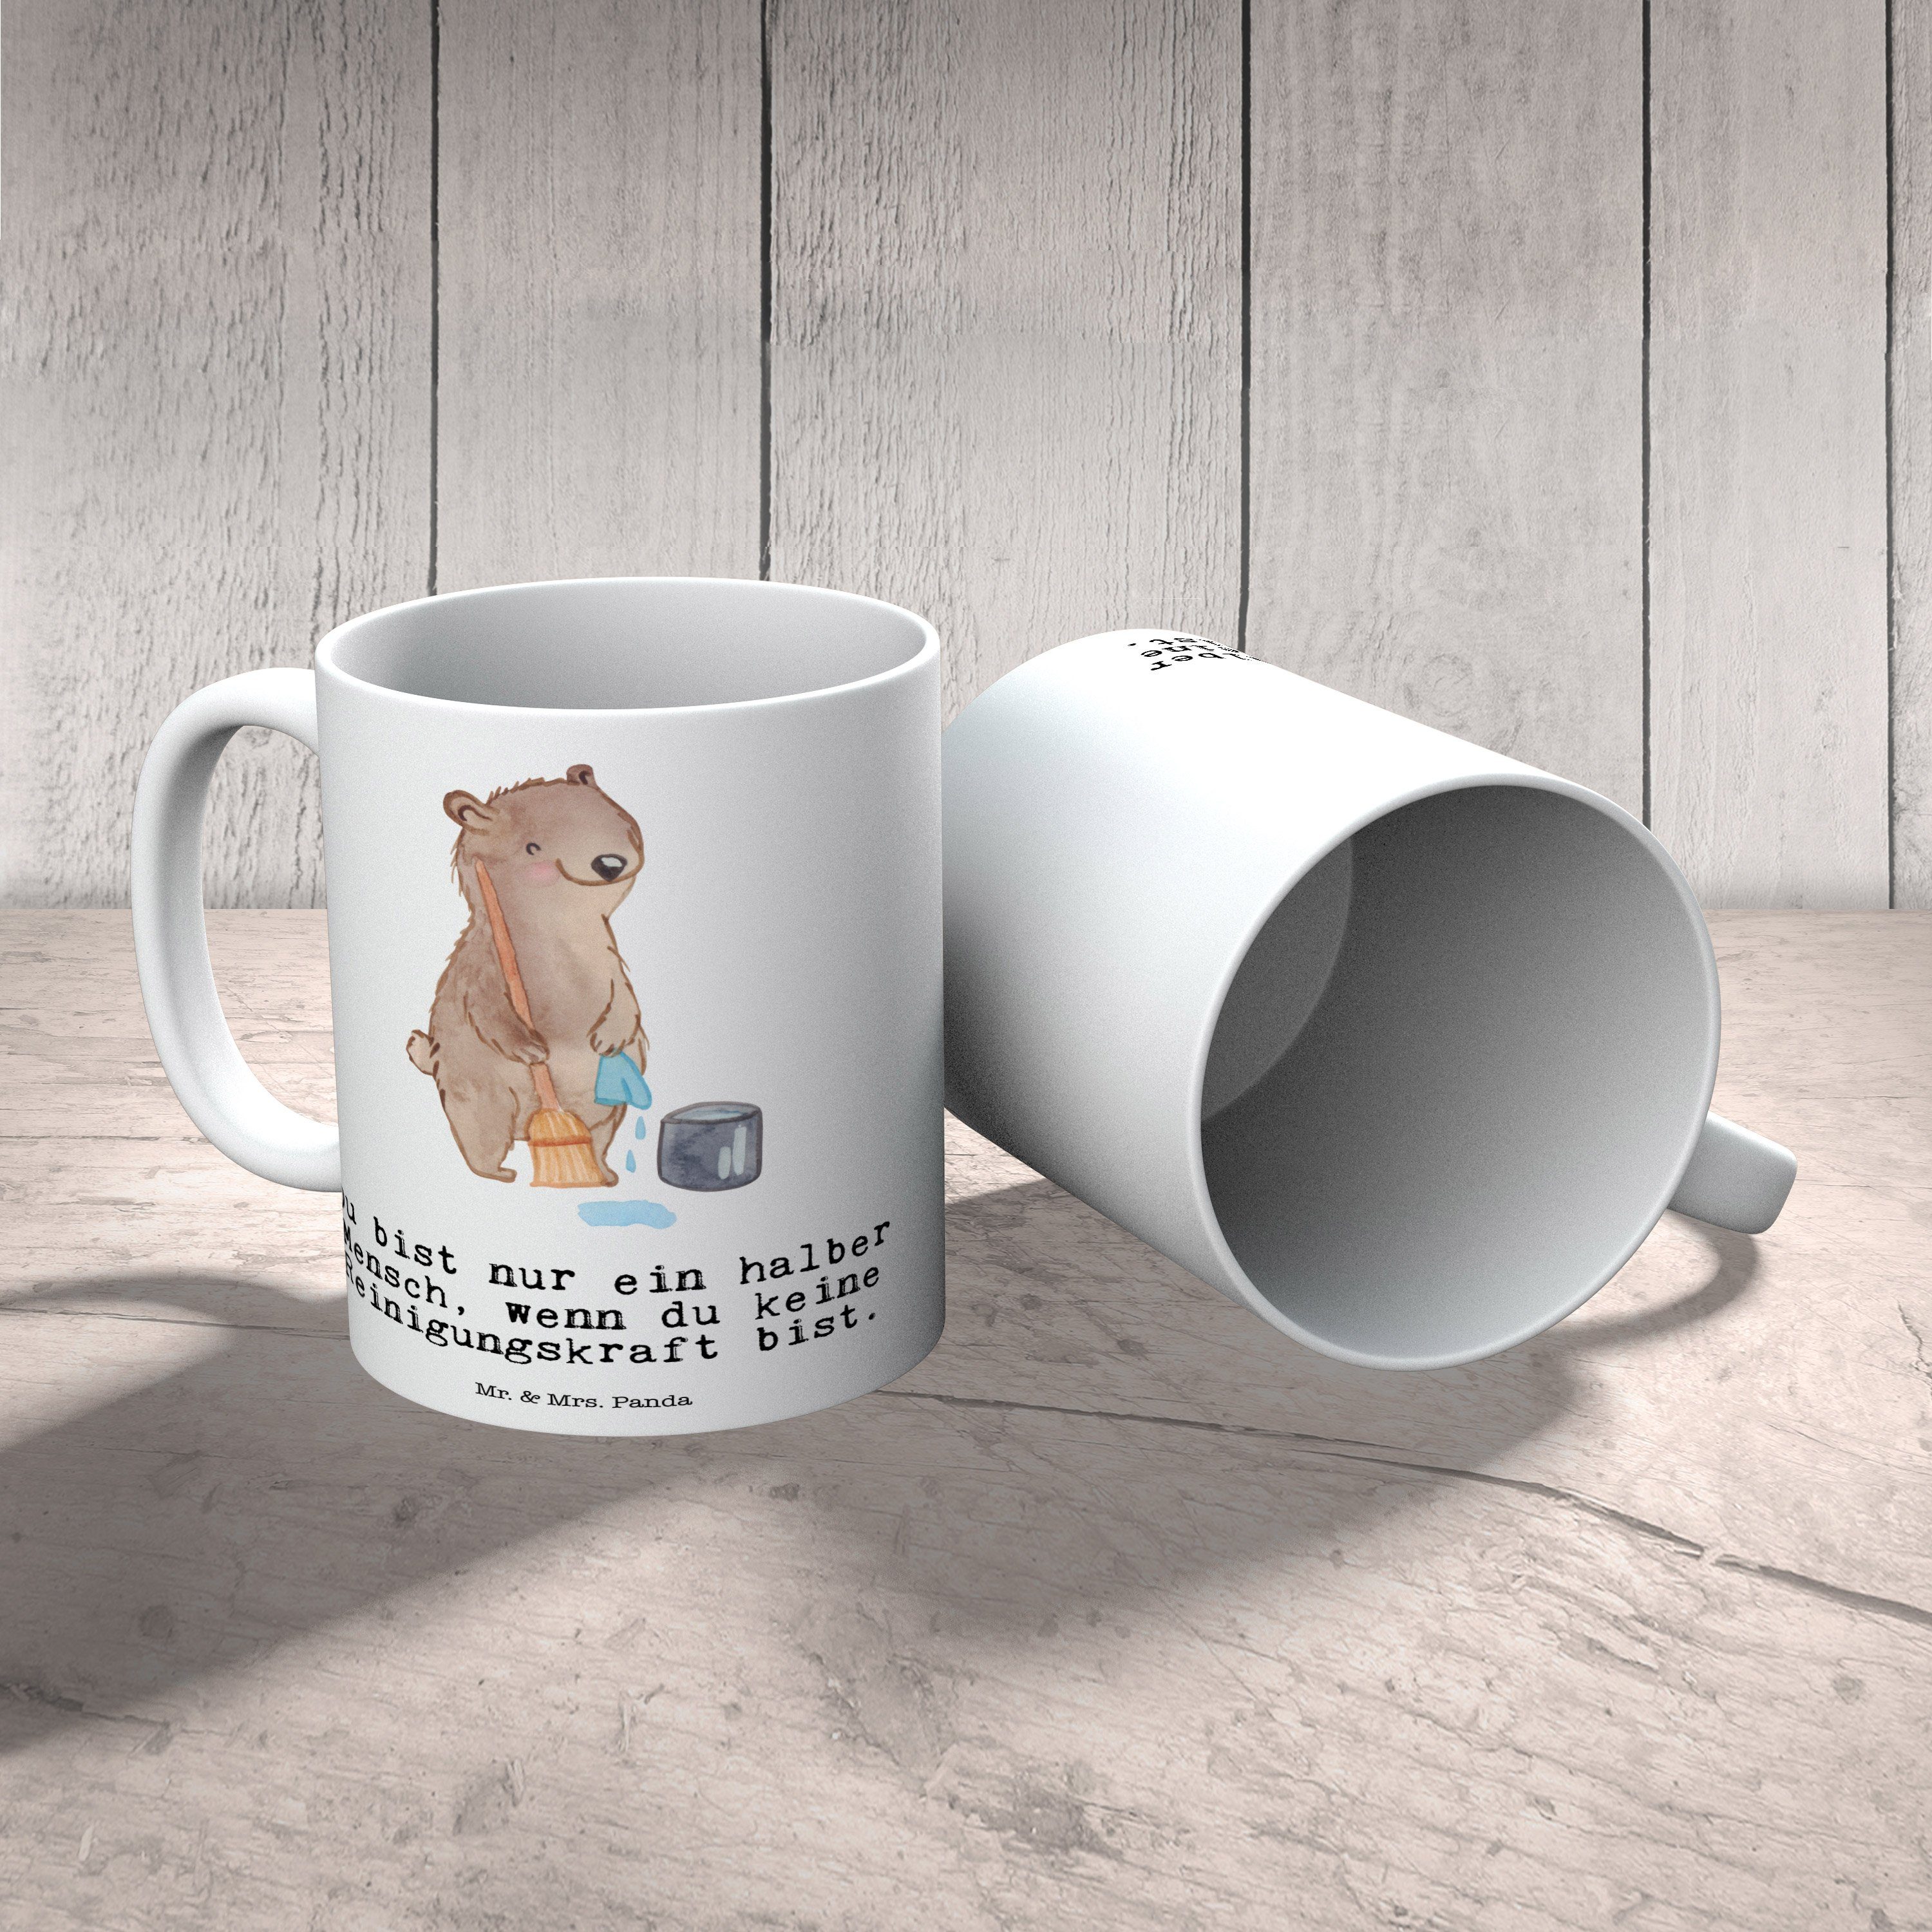 Mr. & Mrs. Panda - Herz Tasse Reinigungskraft Keramik - Sprüche, Weiß Teetasse, Geschenk, mit Tasse